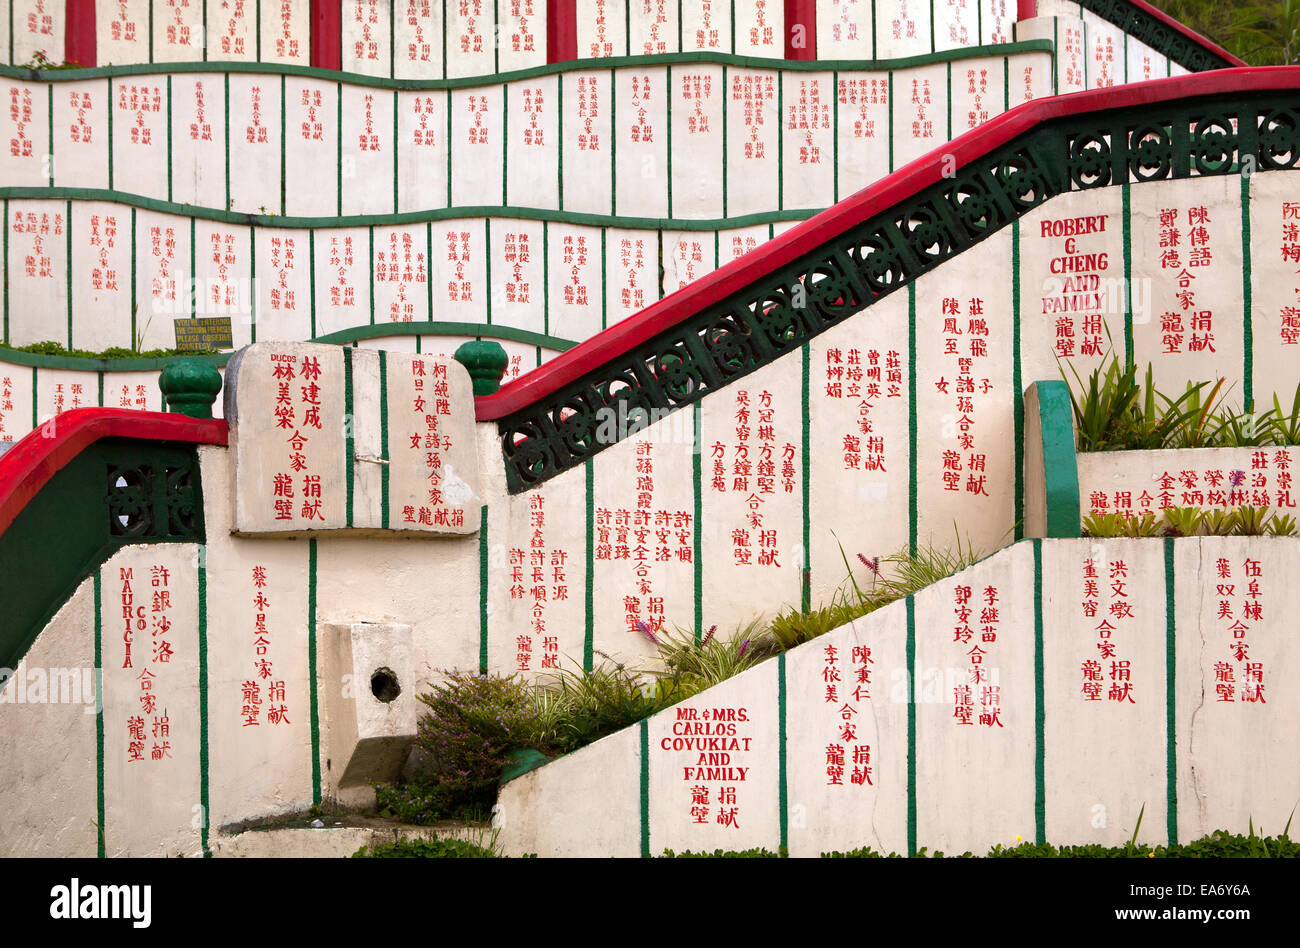 Les murs de l'escalier, une église Bell temple taoïste, dans la ville de Baguio, Philippines sont couverts en caractères chinois naming donateurs. Banque D'Images